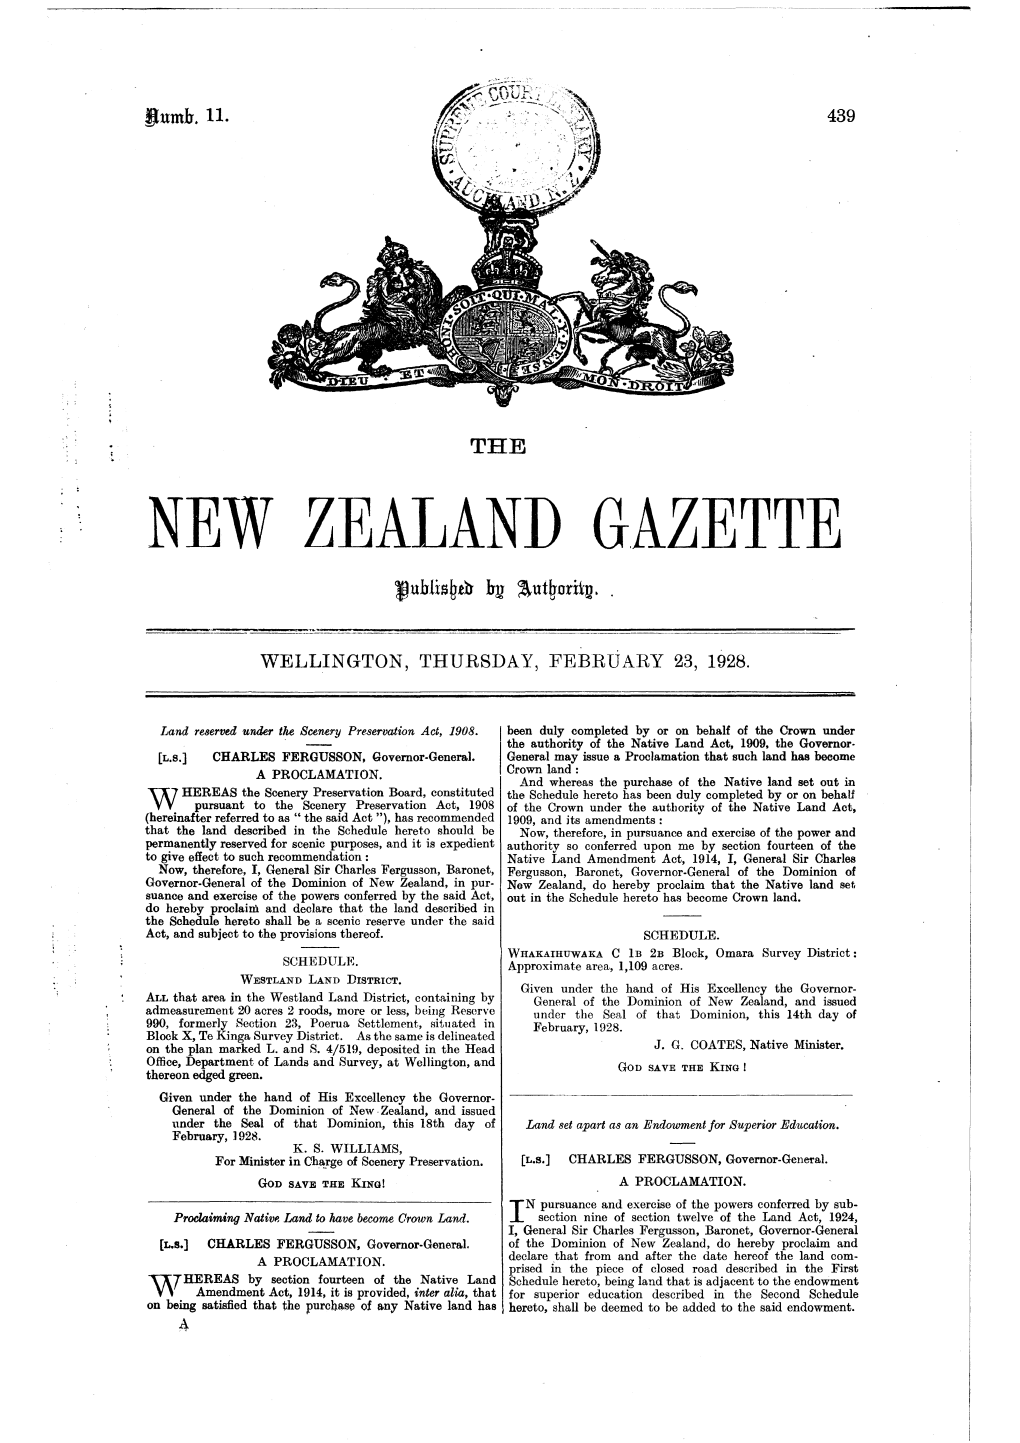 No 11, 23 February 1928